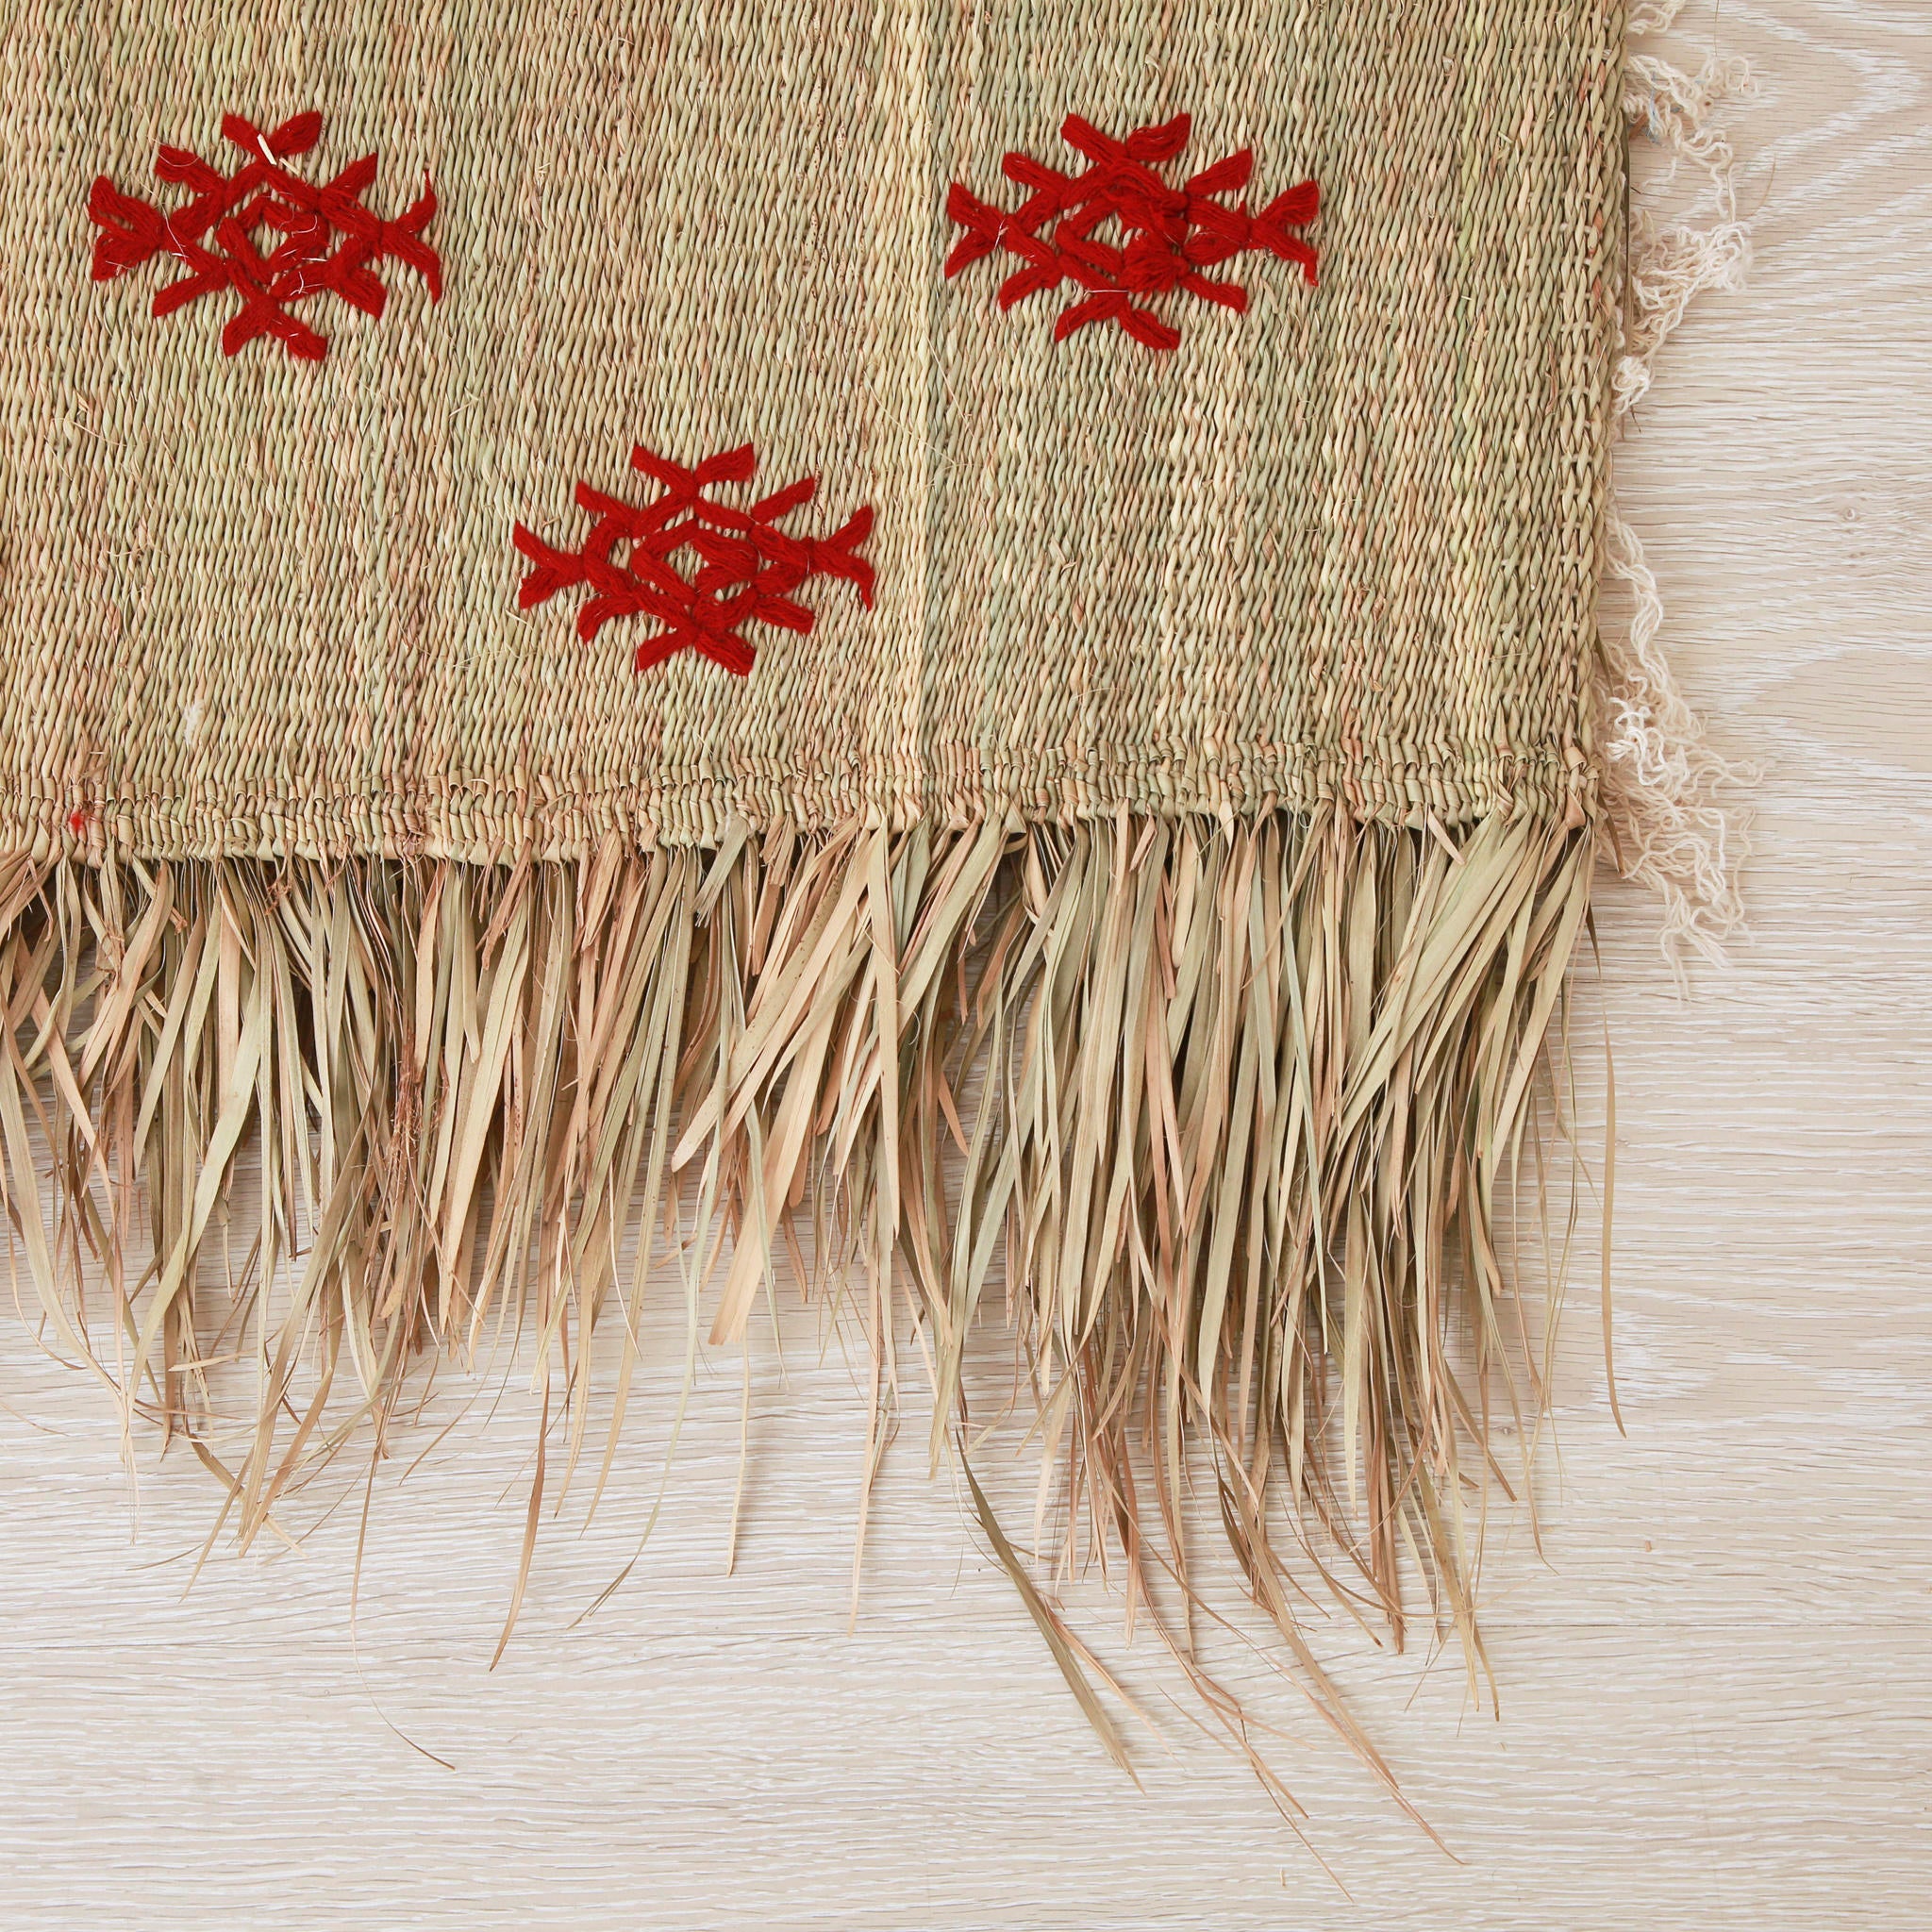 dettaglio dell'angolo di una piccola stuoia hassira intrecciata con paglia di palma e ricamata con simboli in lana rossa